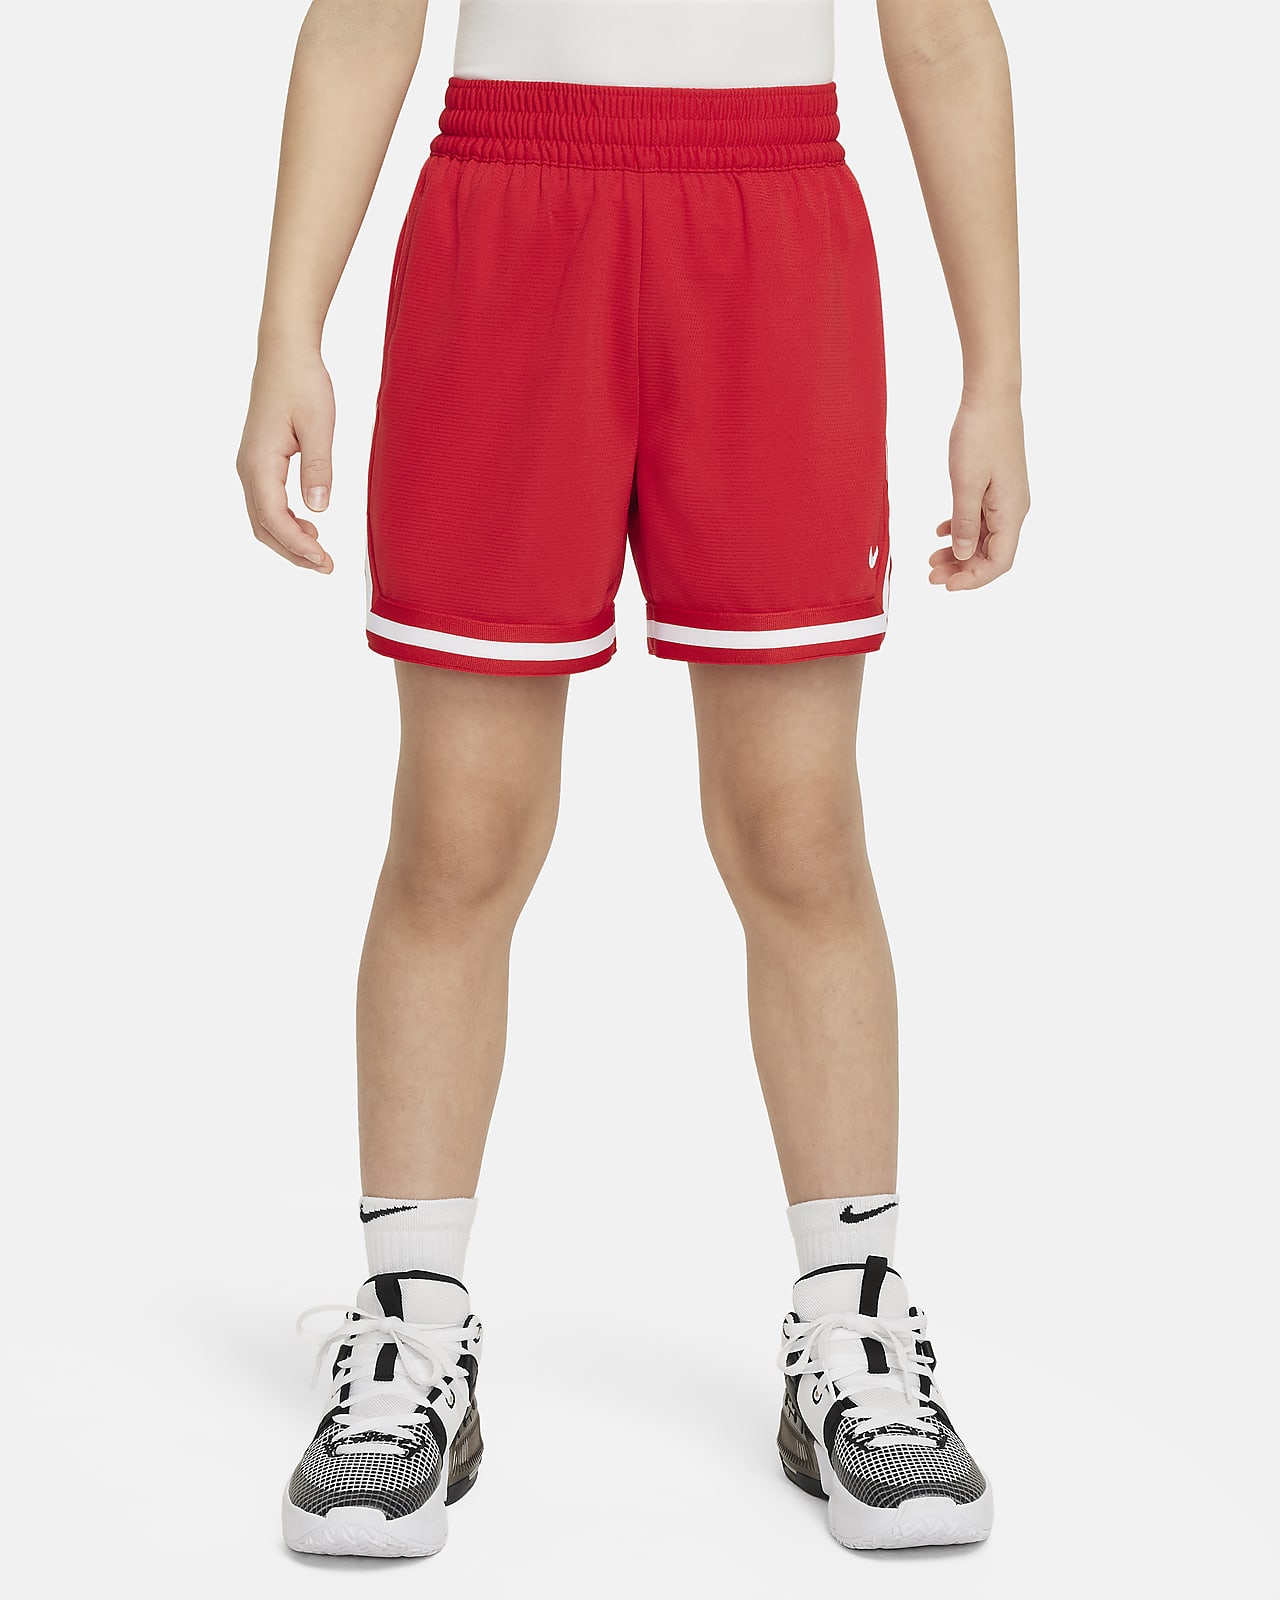 Shorts de básquetbol de 13 cm para niños talla grande Nike DNA